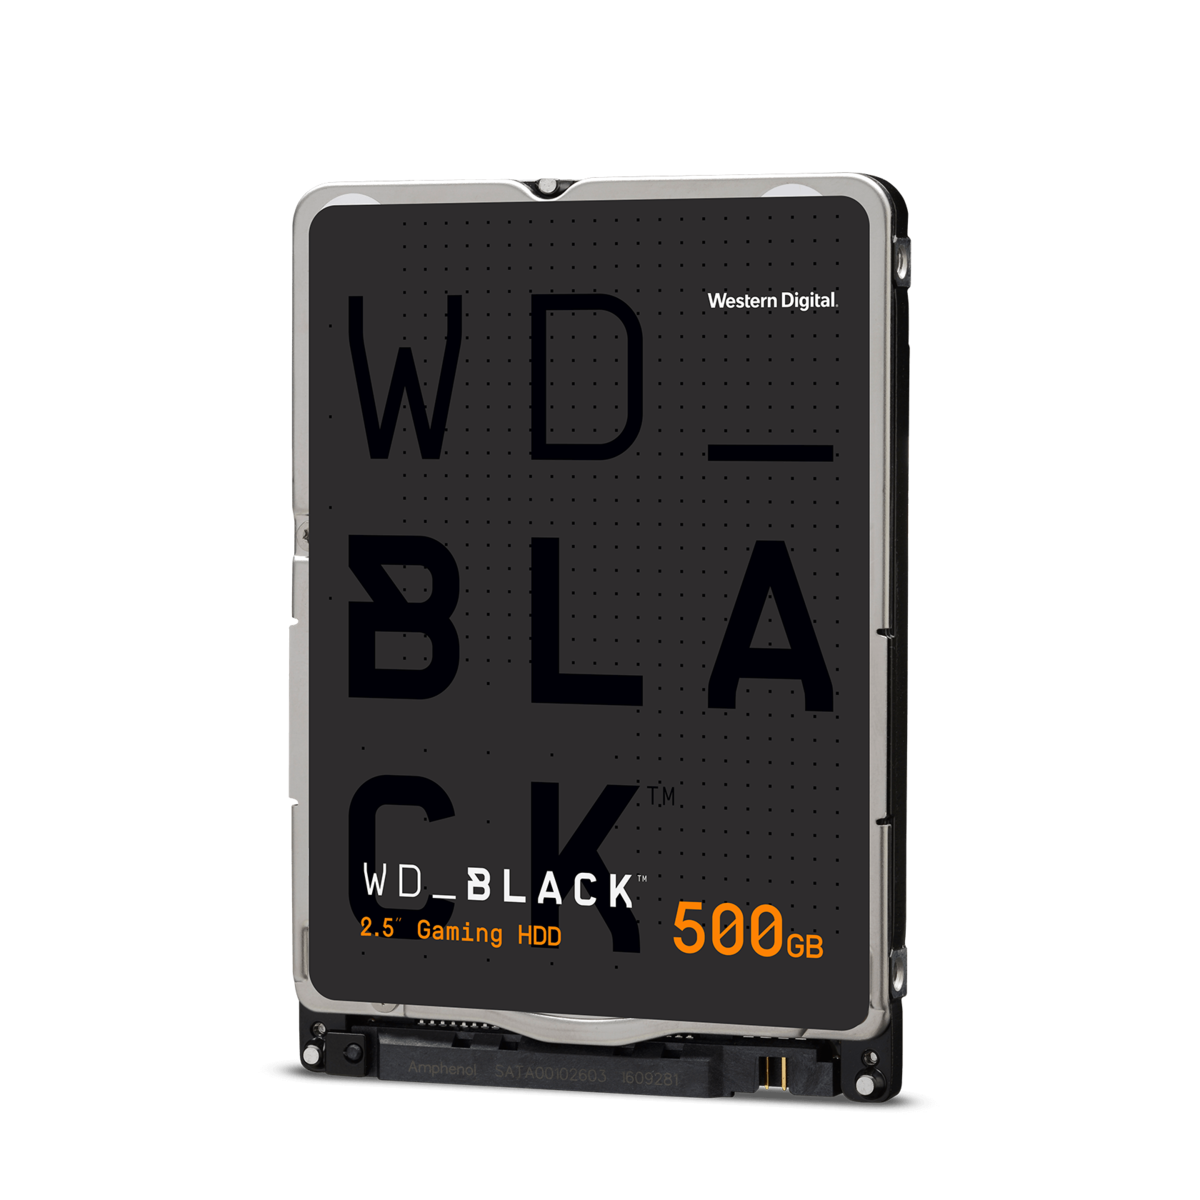 WD BLACK 500GB 7200rpm HARD DRIVE WD5000LPLX 2.5in internal 7mm 